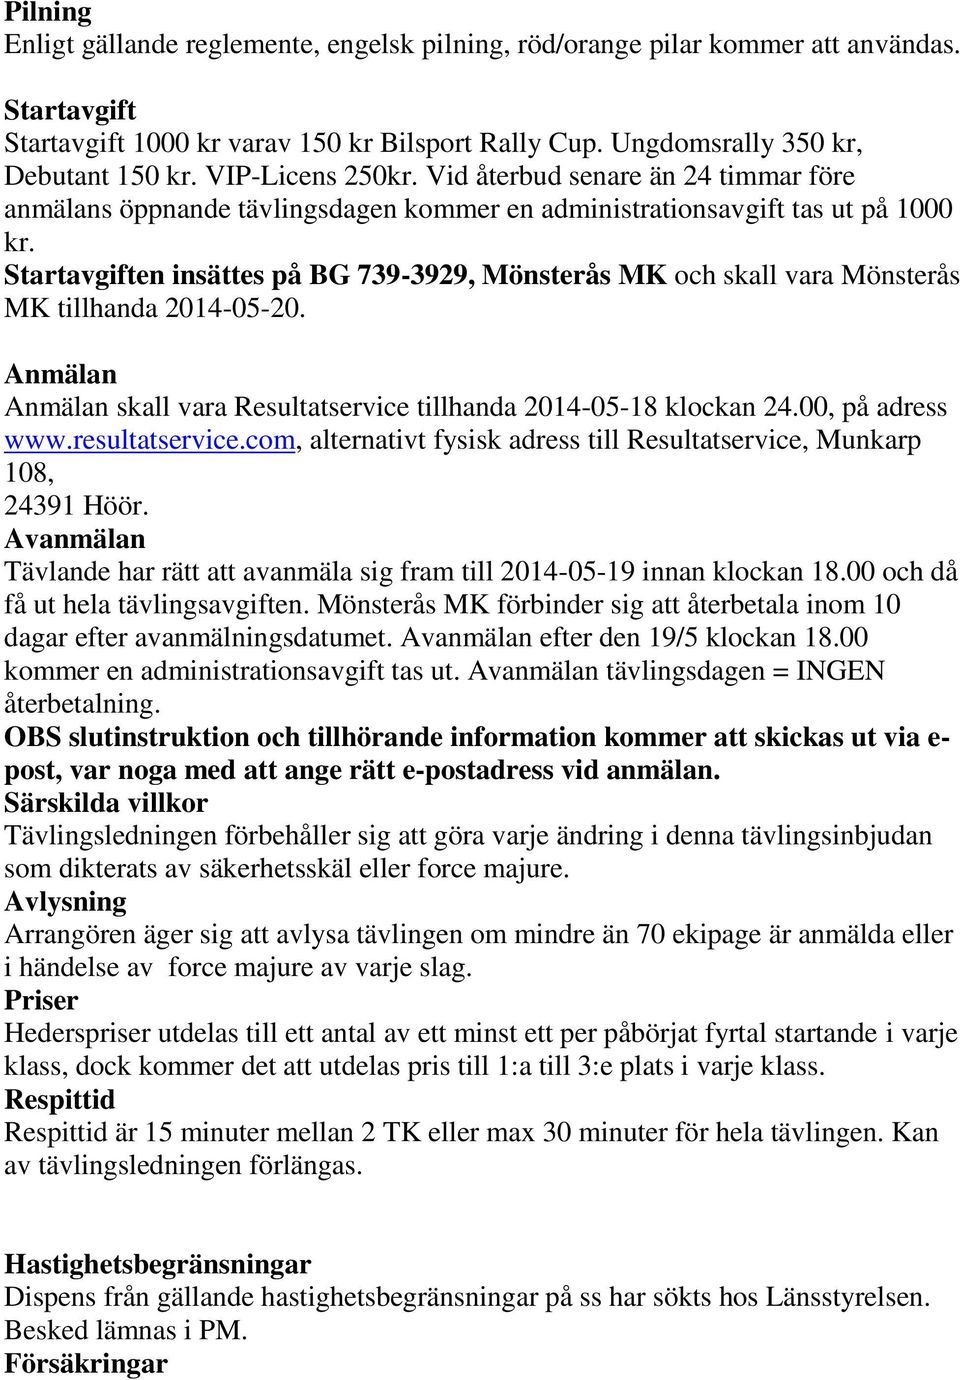 Startavgiften insättes på BG 739-3929, Mönsterås MK och skall vara Mönsterås MK tillhanda 2014-05-20. Anmälan Anmälan skall vara Resultatservice tillhanda 2014-05-18 klockan 24.00, på adress www.